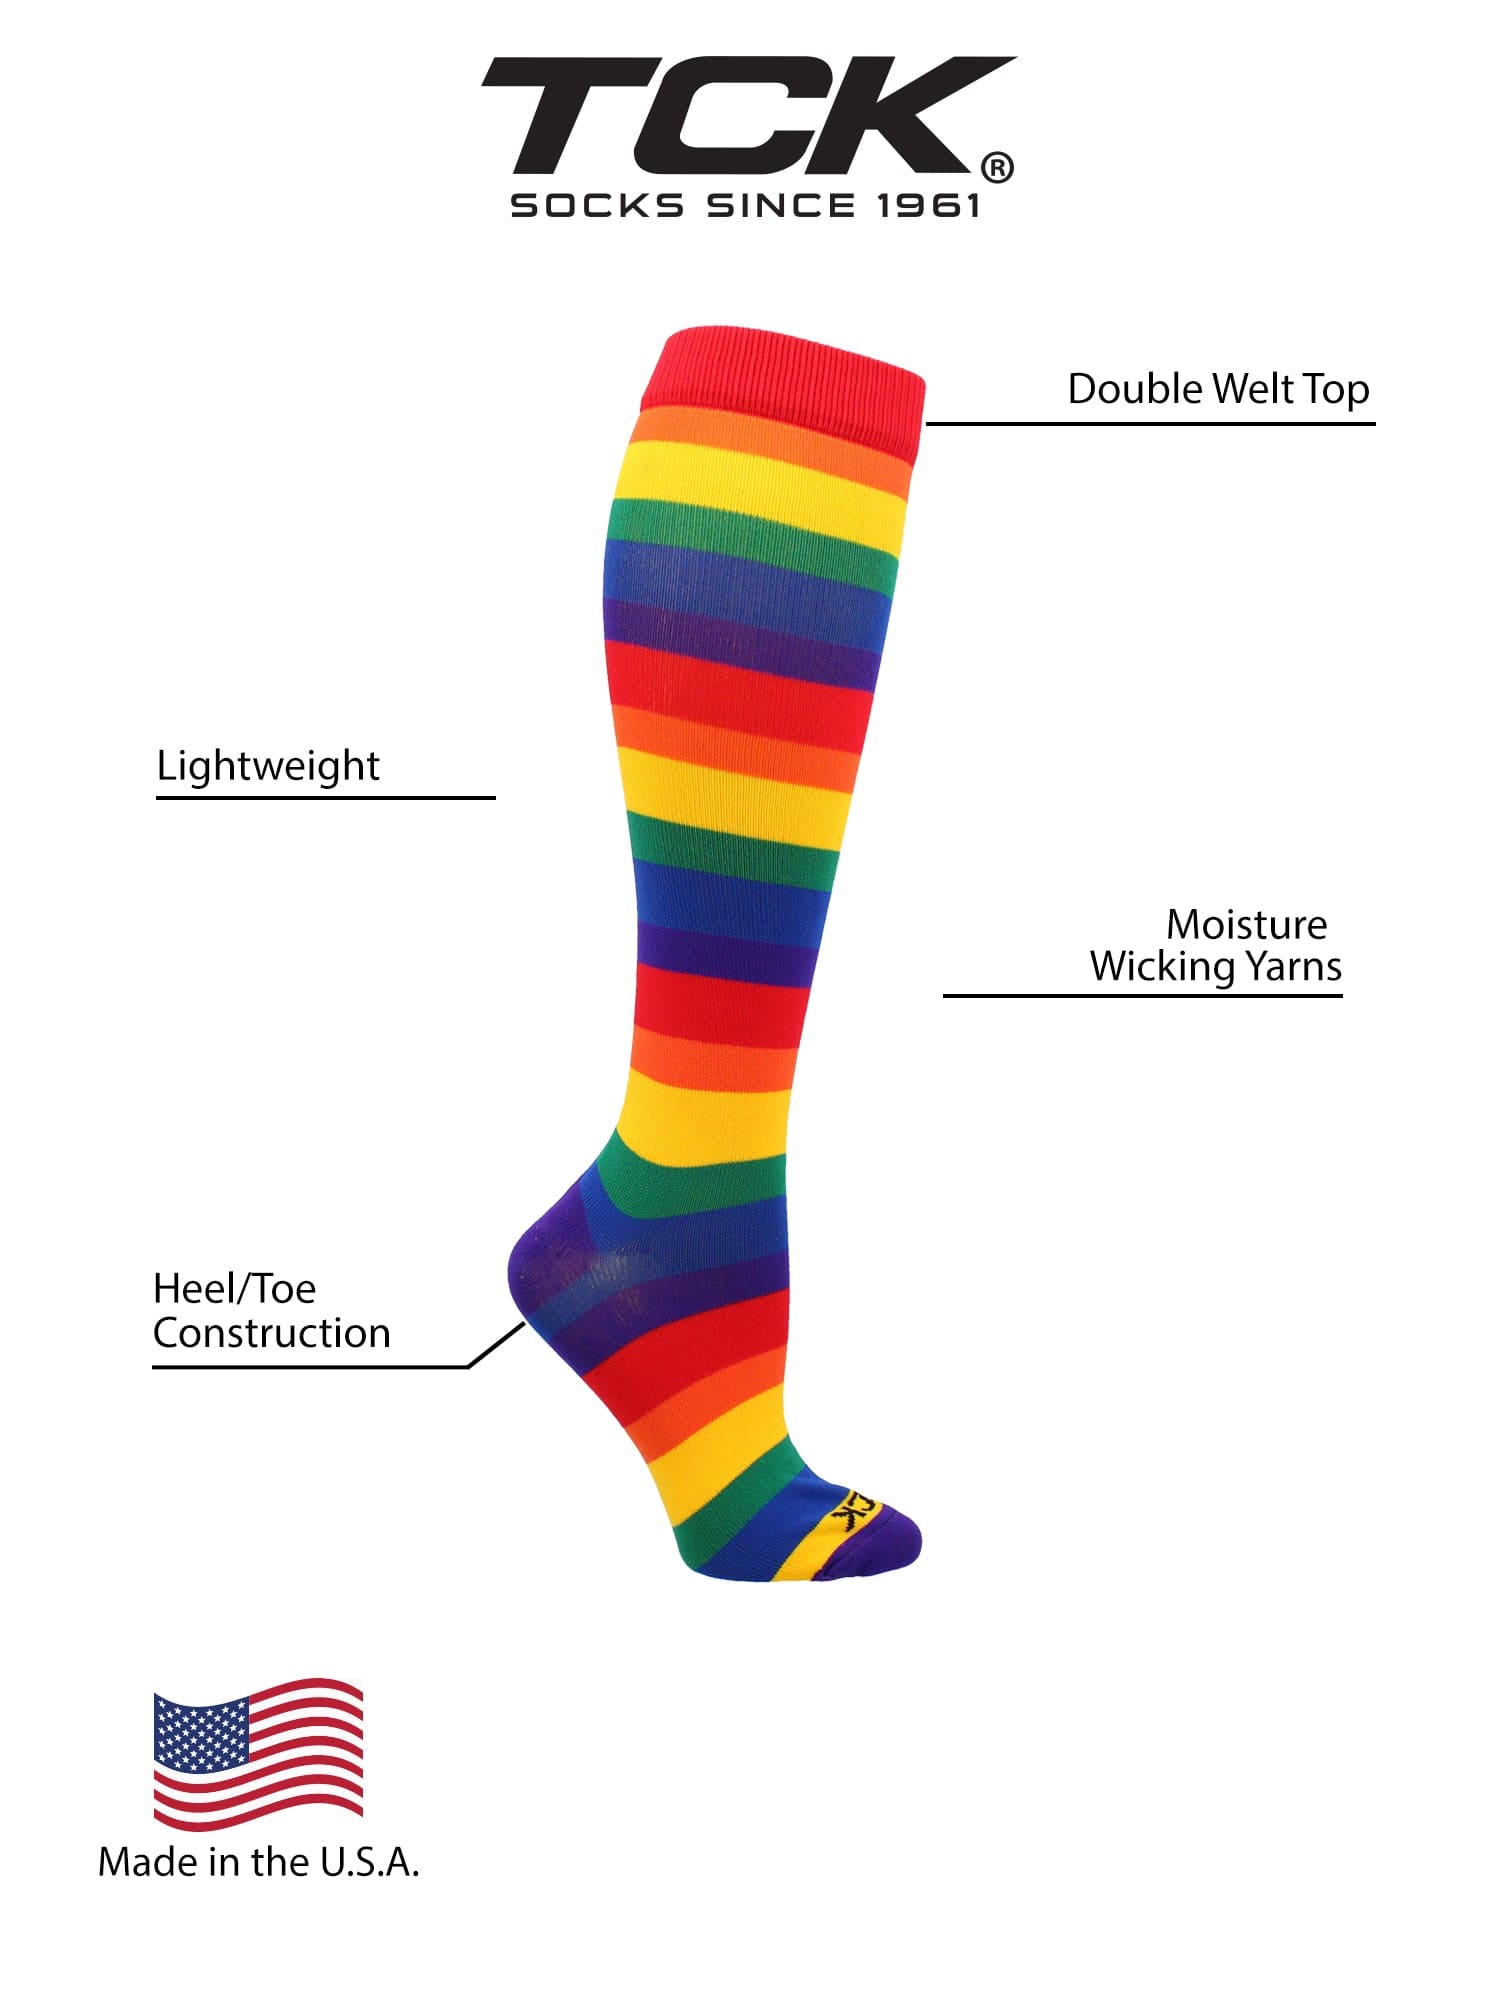 Rainbow Knee High Socks - Made in USA